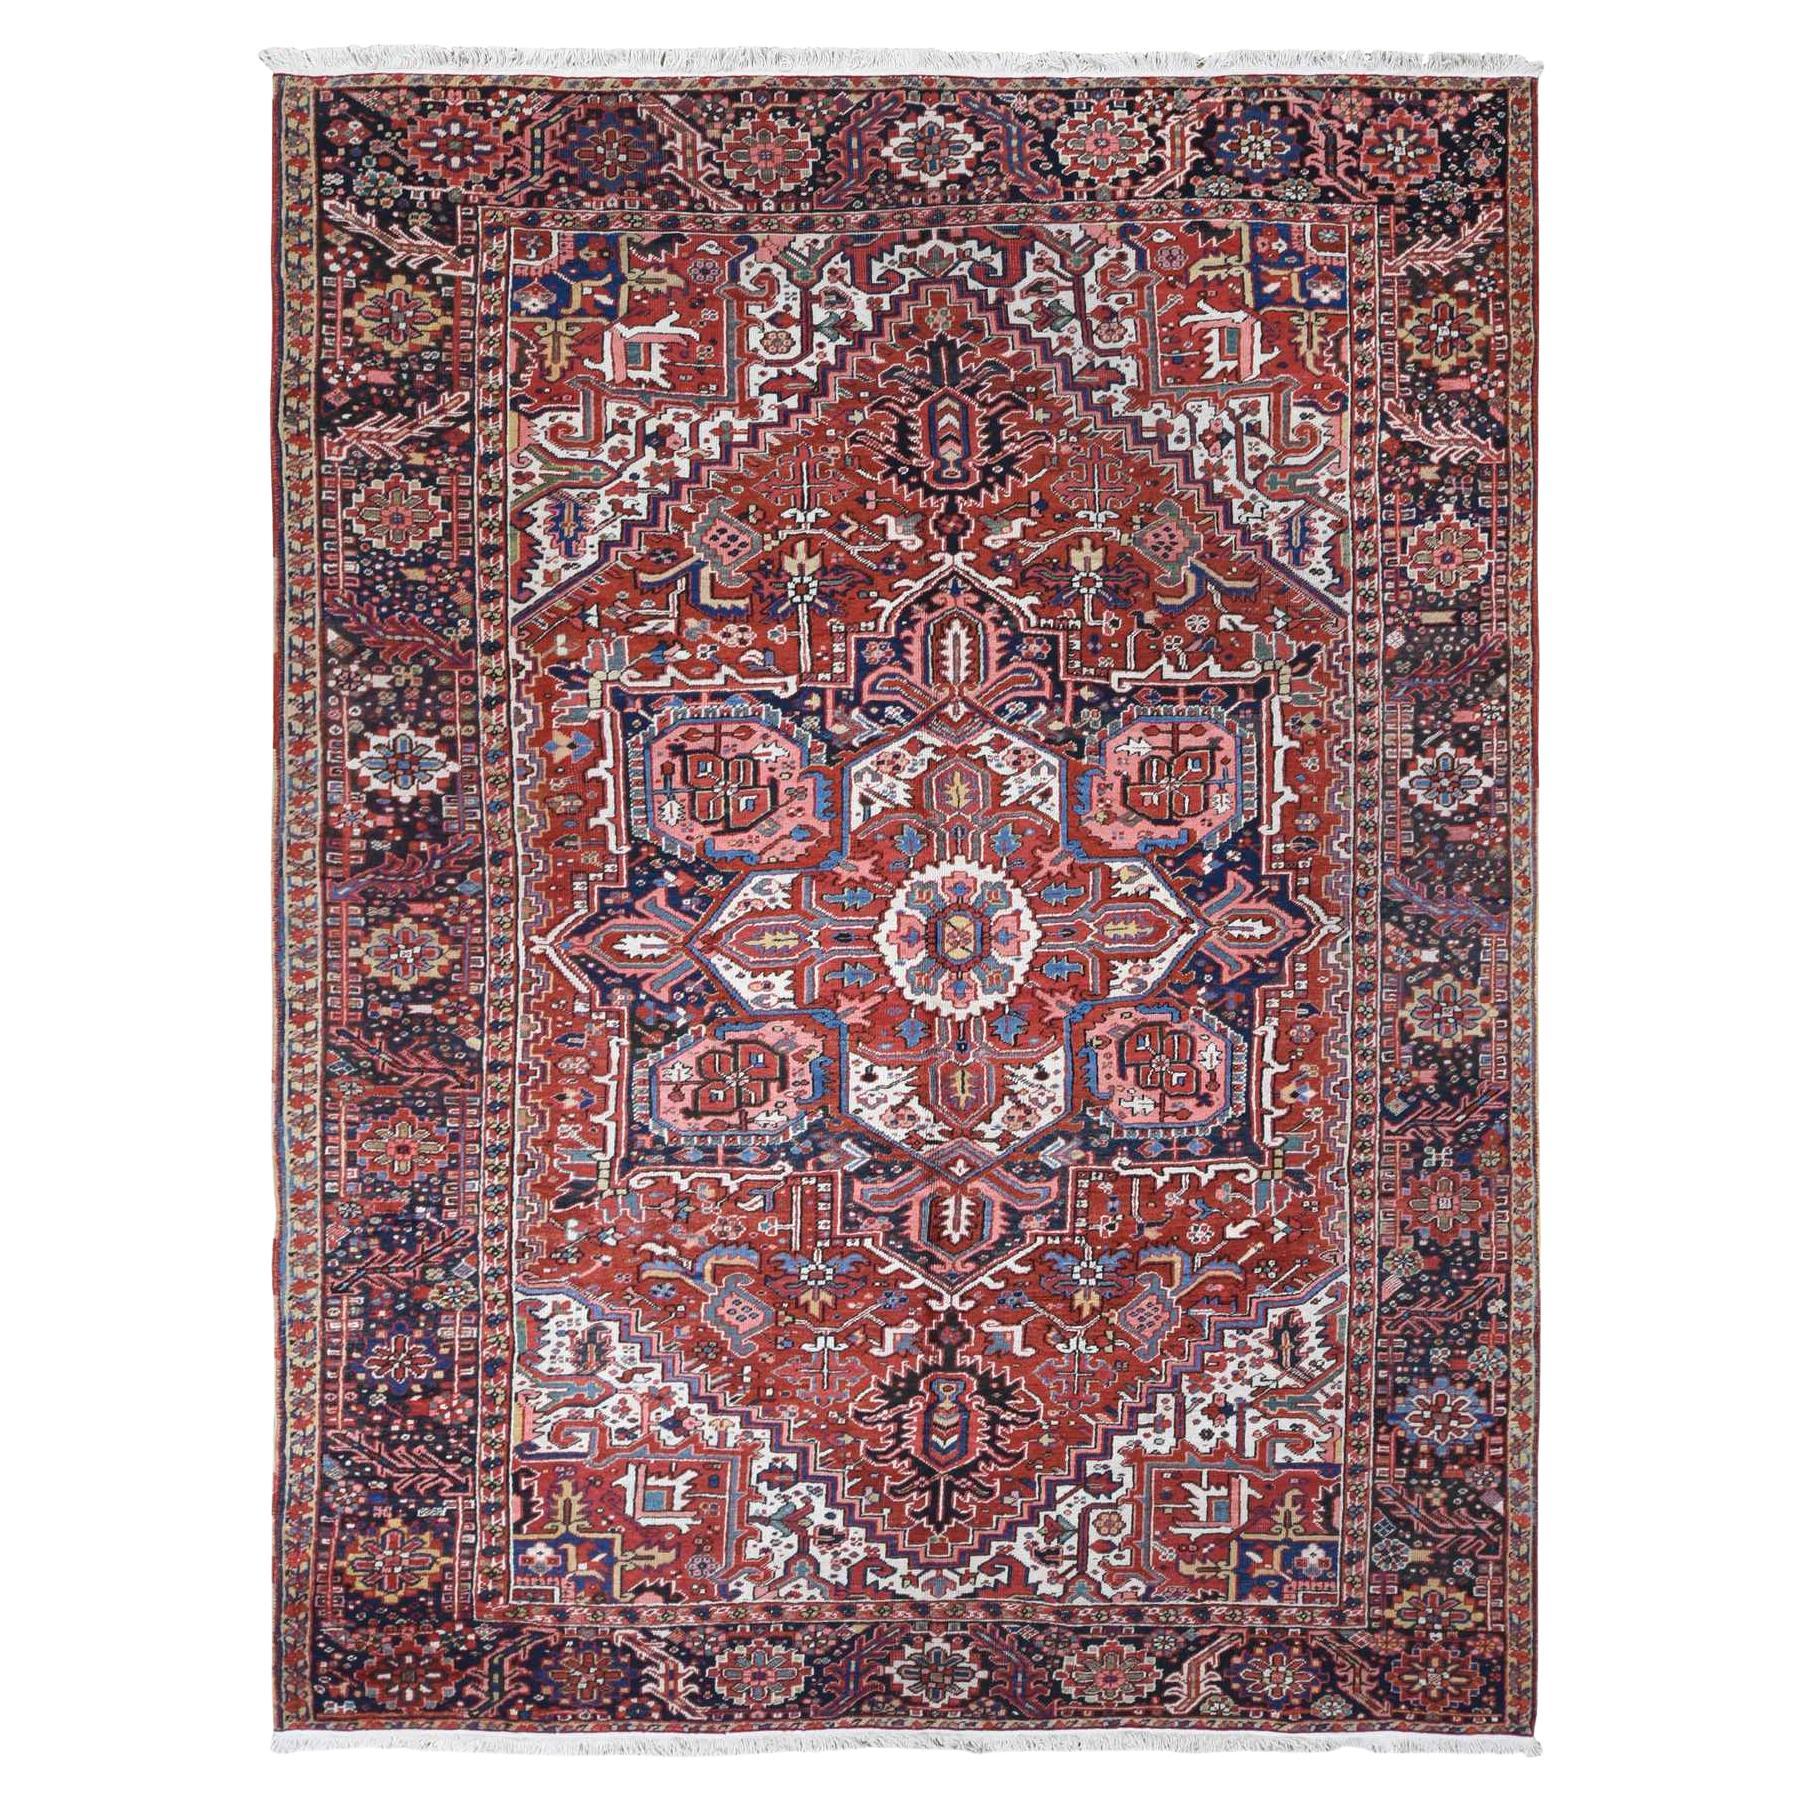 Roter antiker persischer, handgeknüpfter Heriz-Teppich aus reiner Wolle in Vollflor